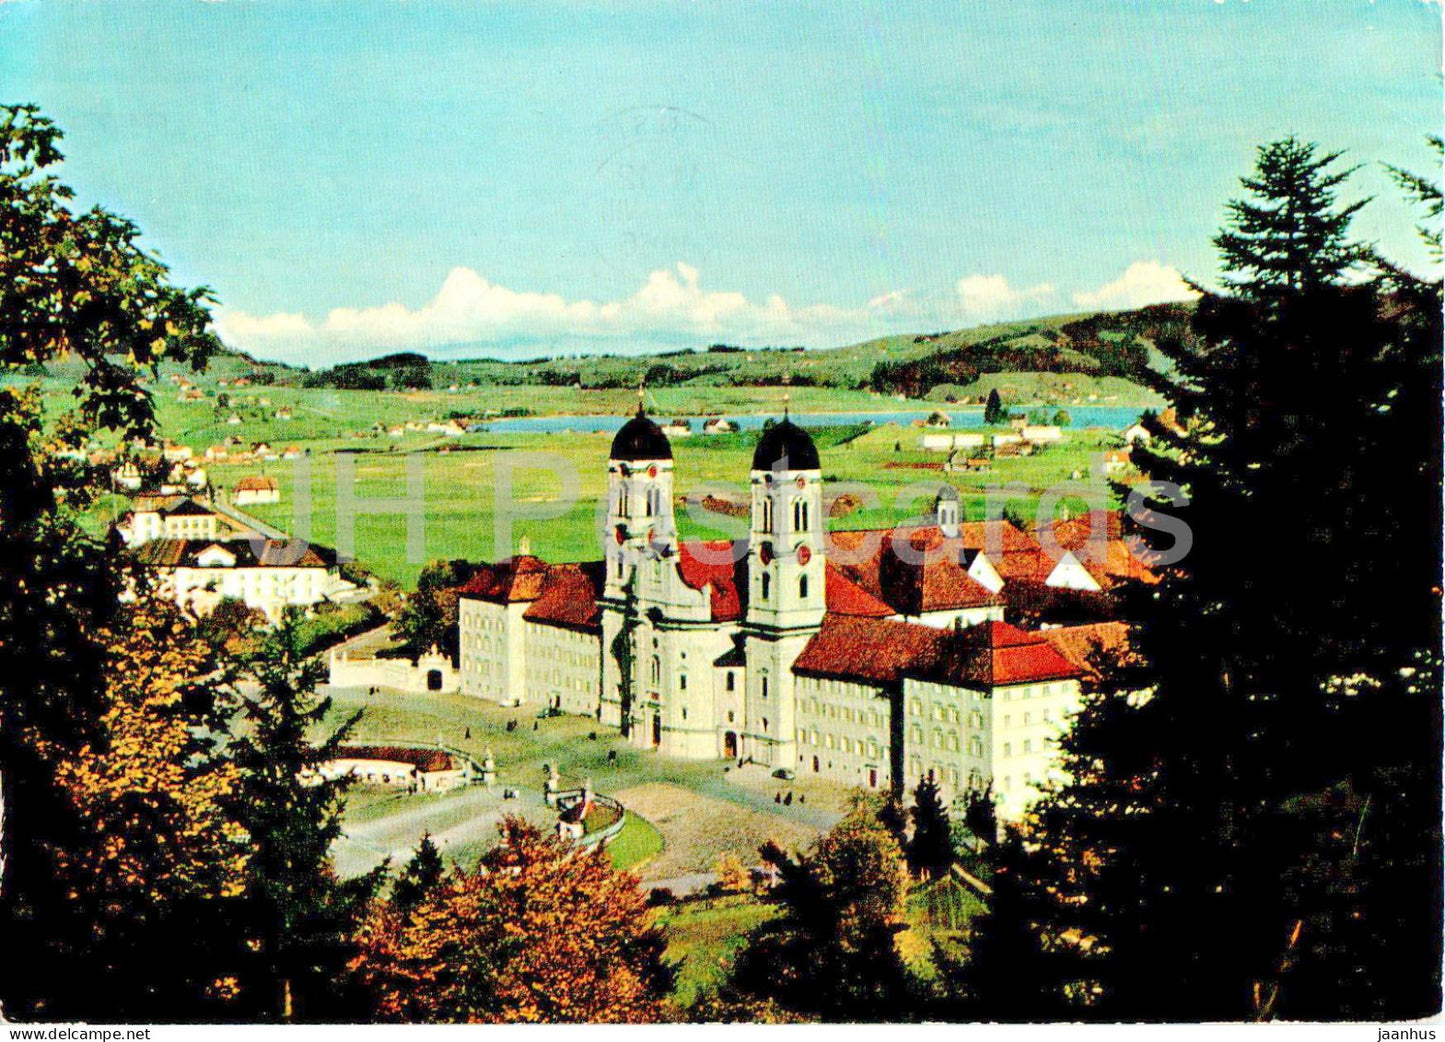 Einsiedeln - Kloster mit Blick zum Sihlsee - 2 - 1966 - Switzerland - used - JH Postcards